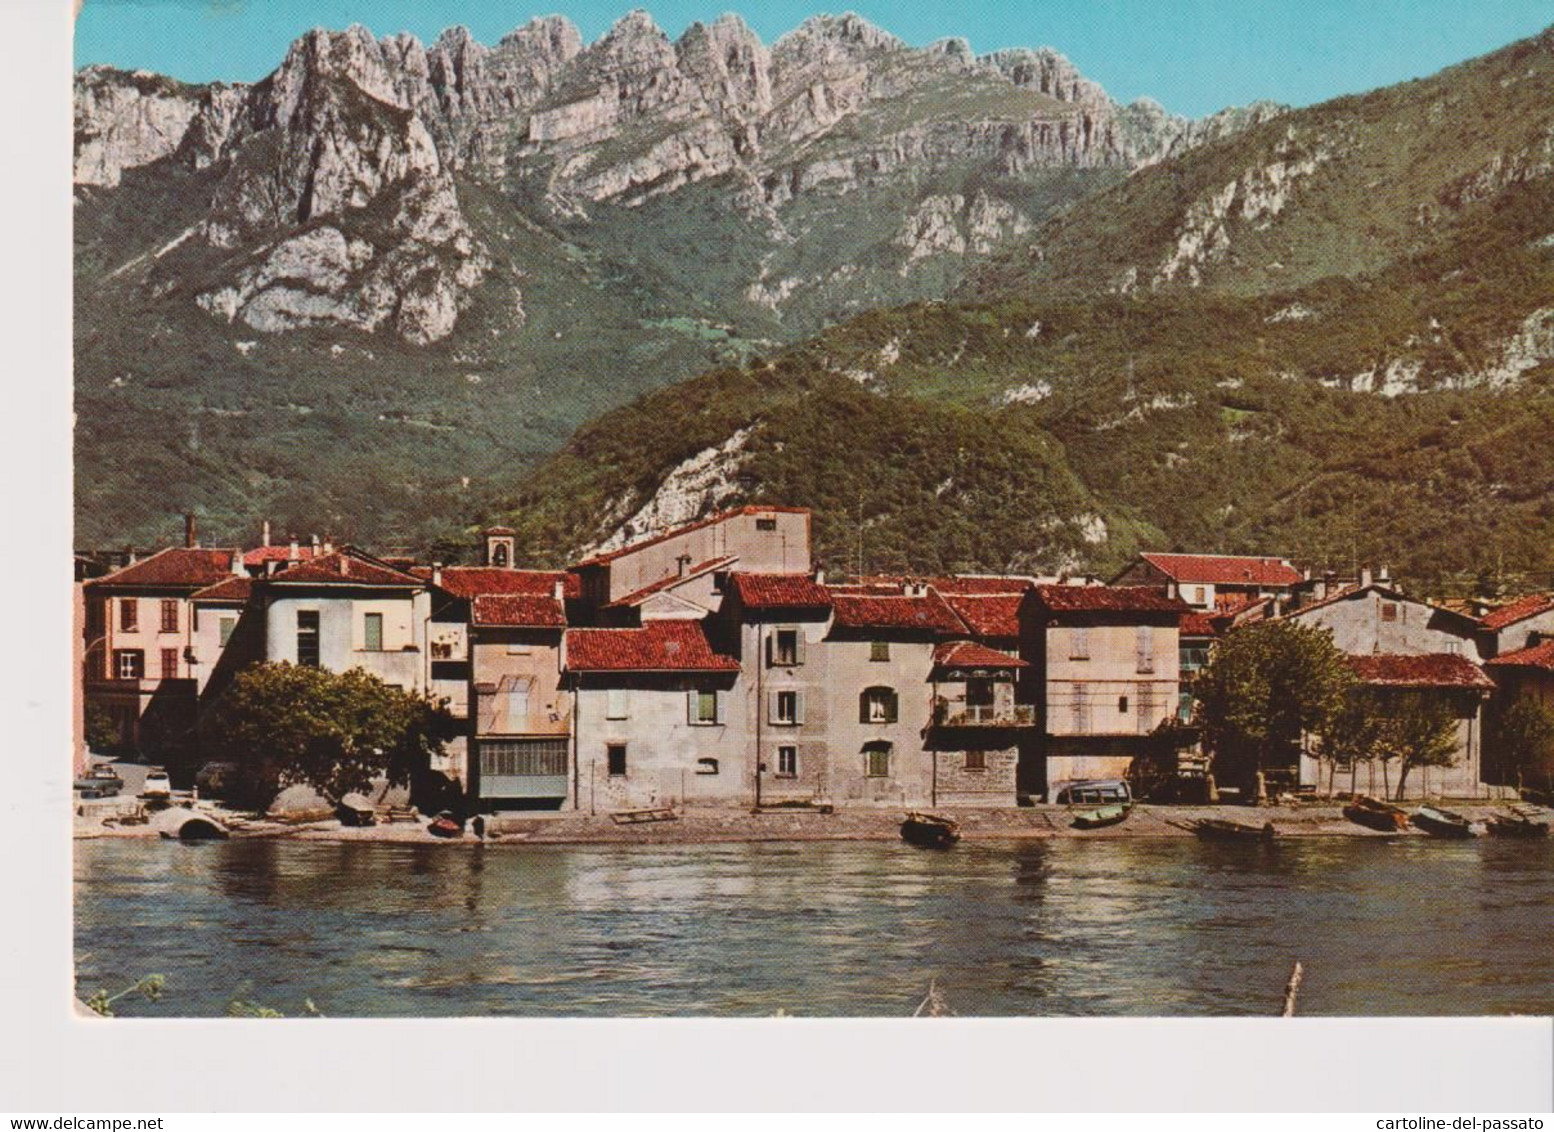 PESCARENICO, Lecco (Lago Di Como) - Monte Resegone  VG - Lecco